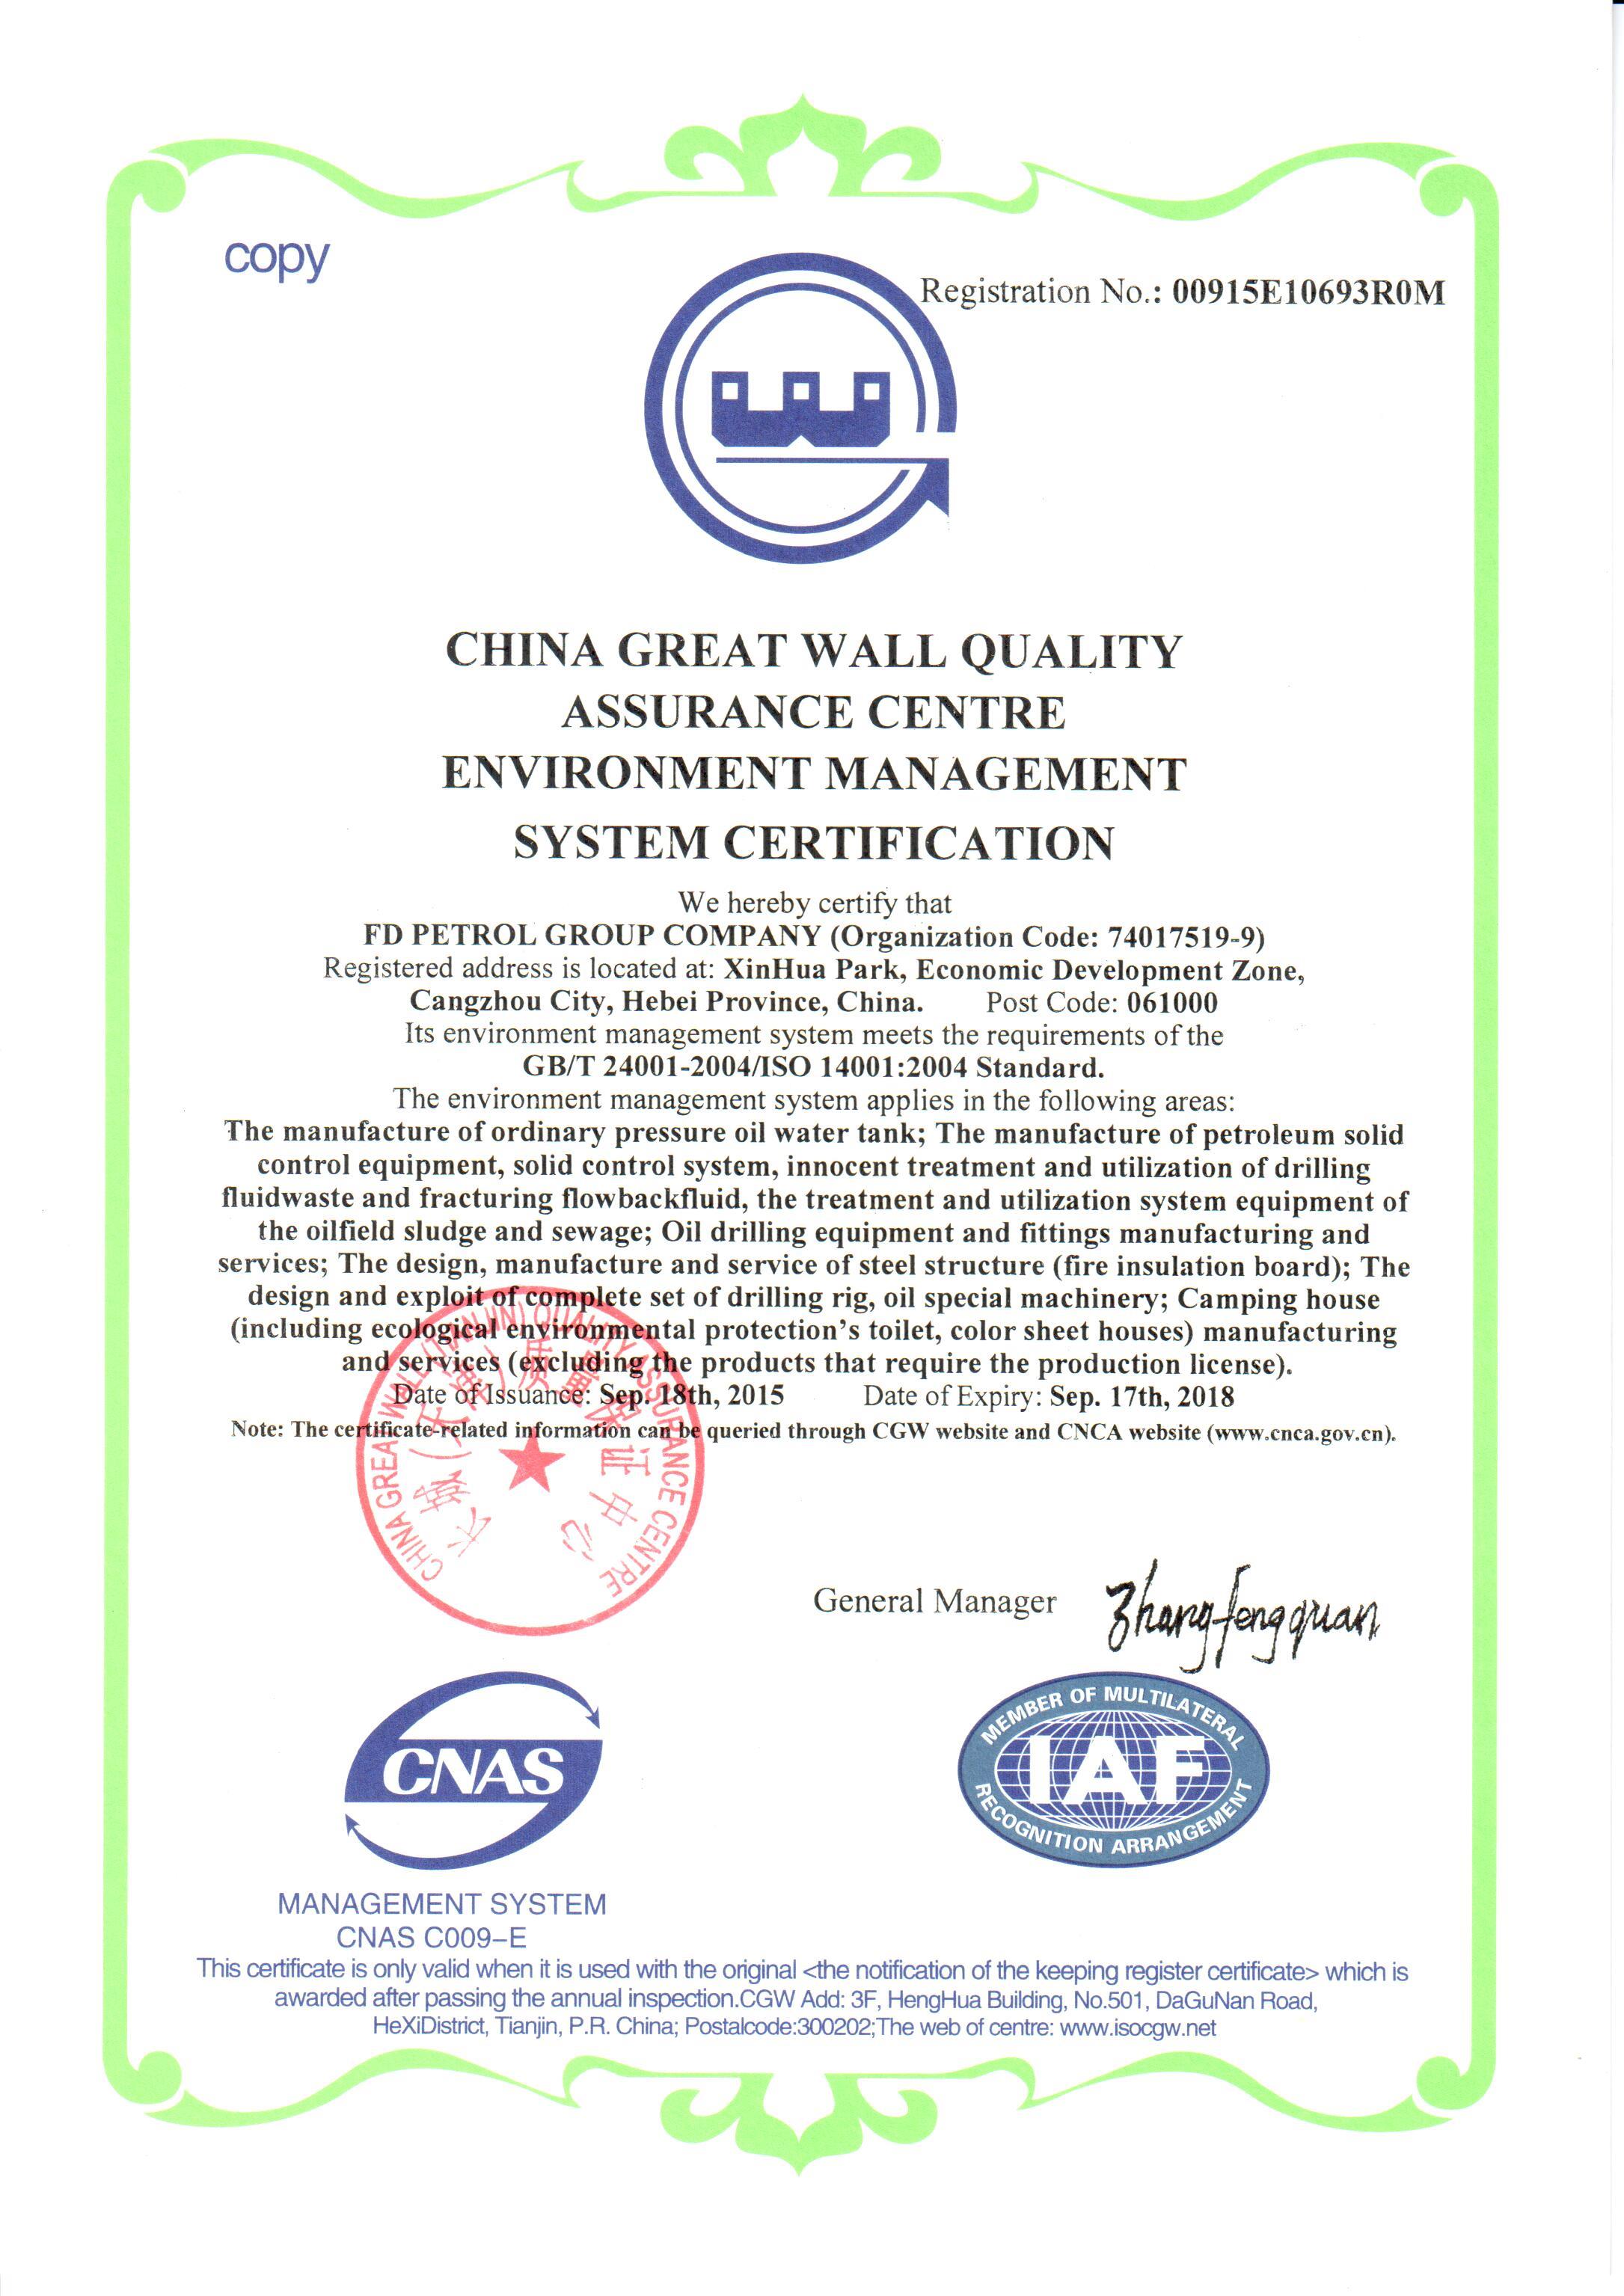 ISO Certificates(图2)